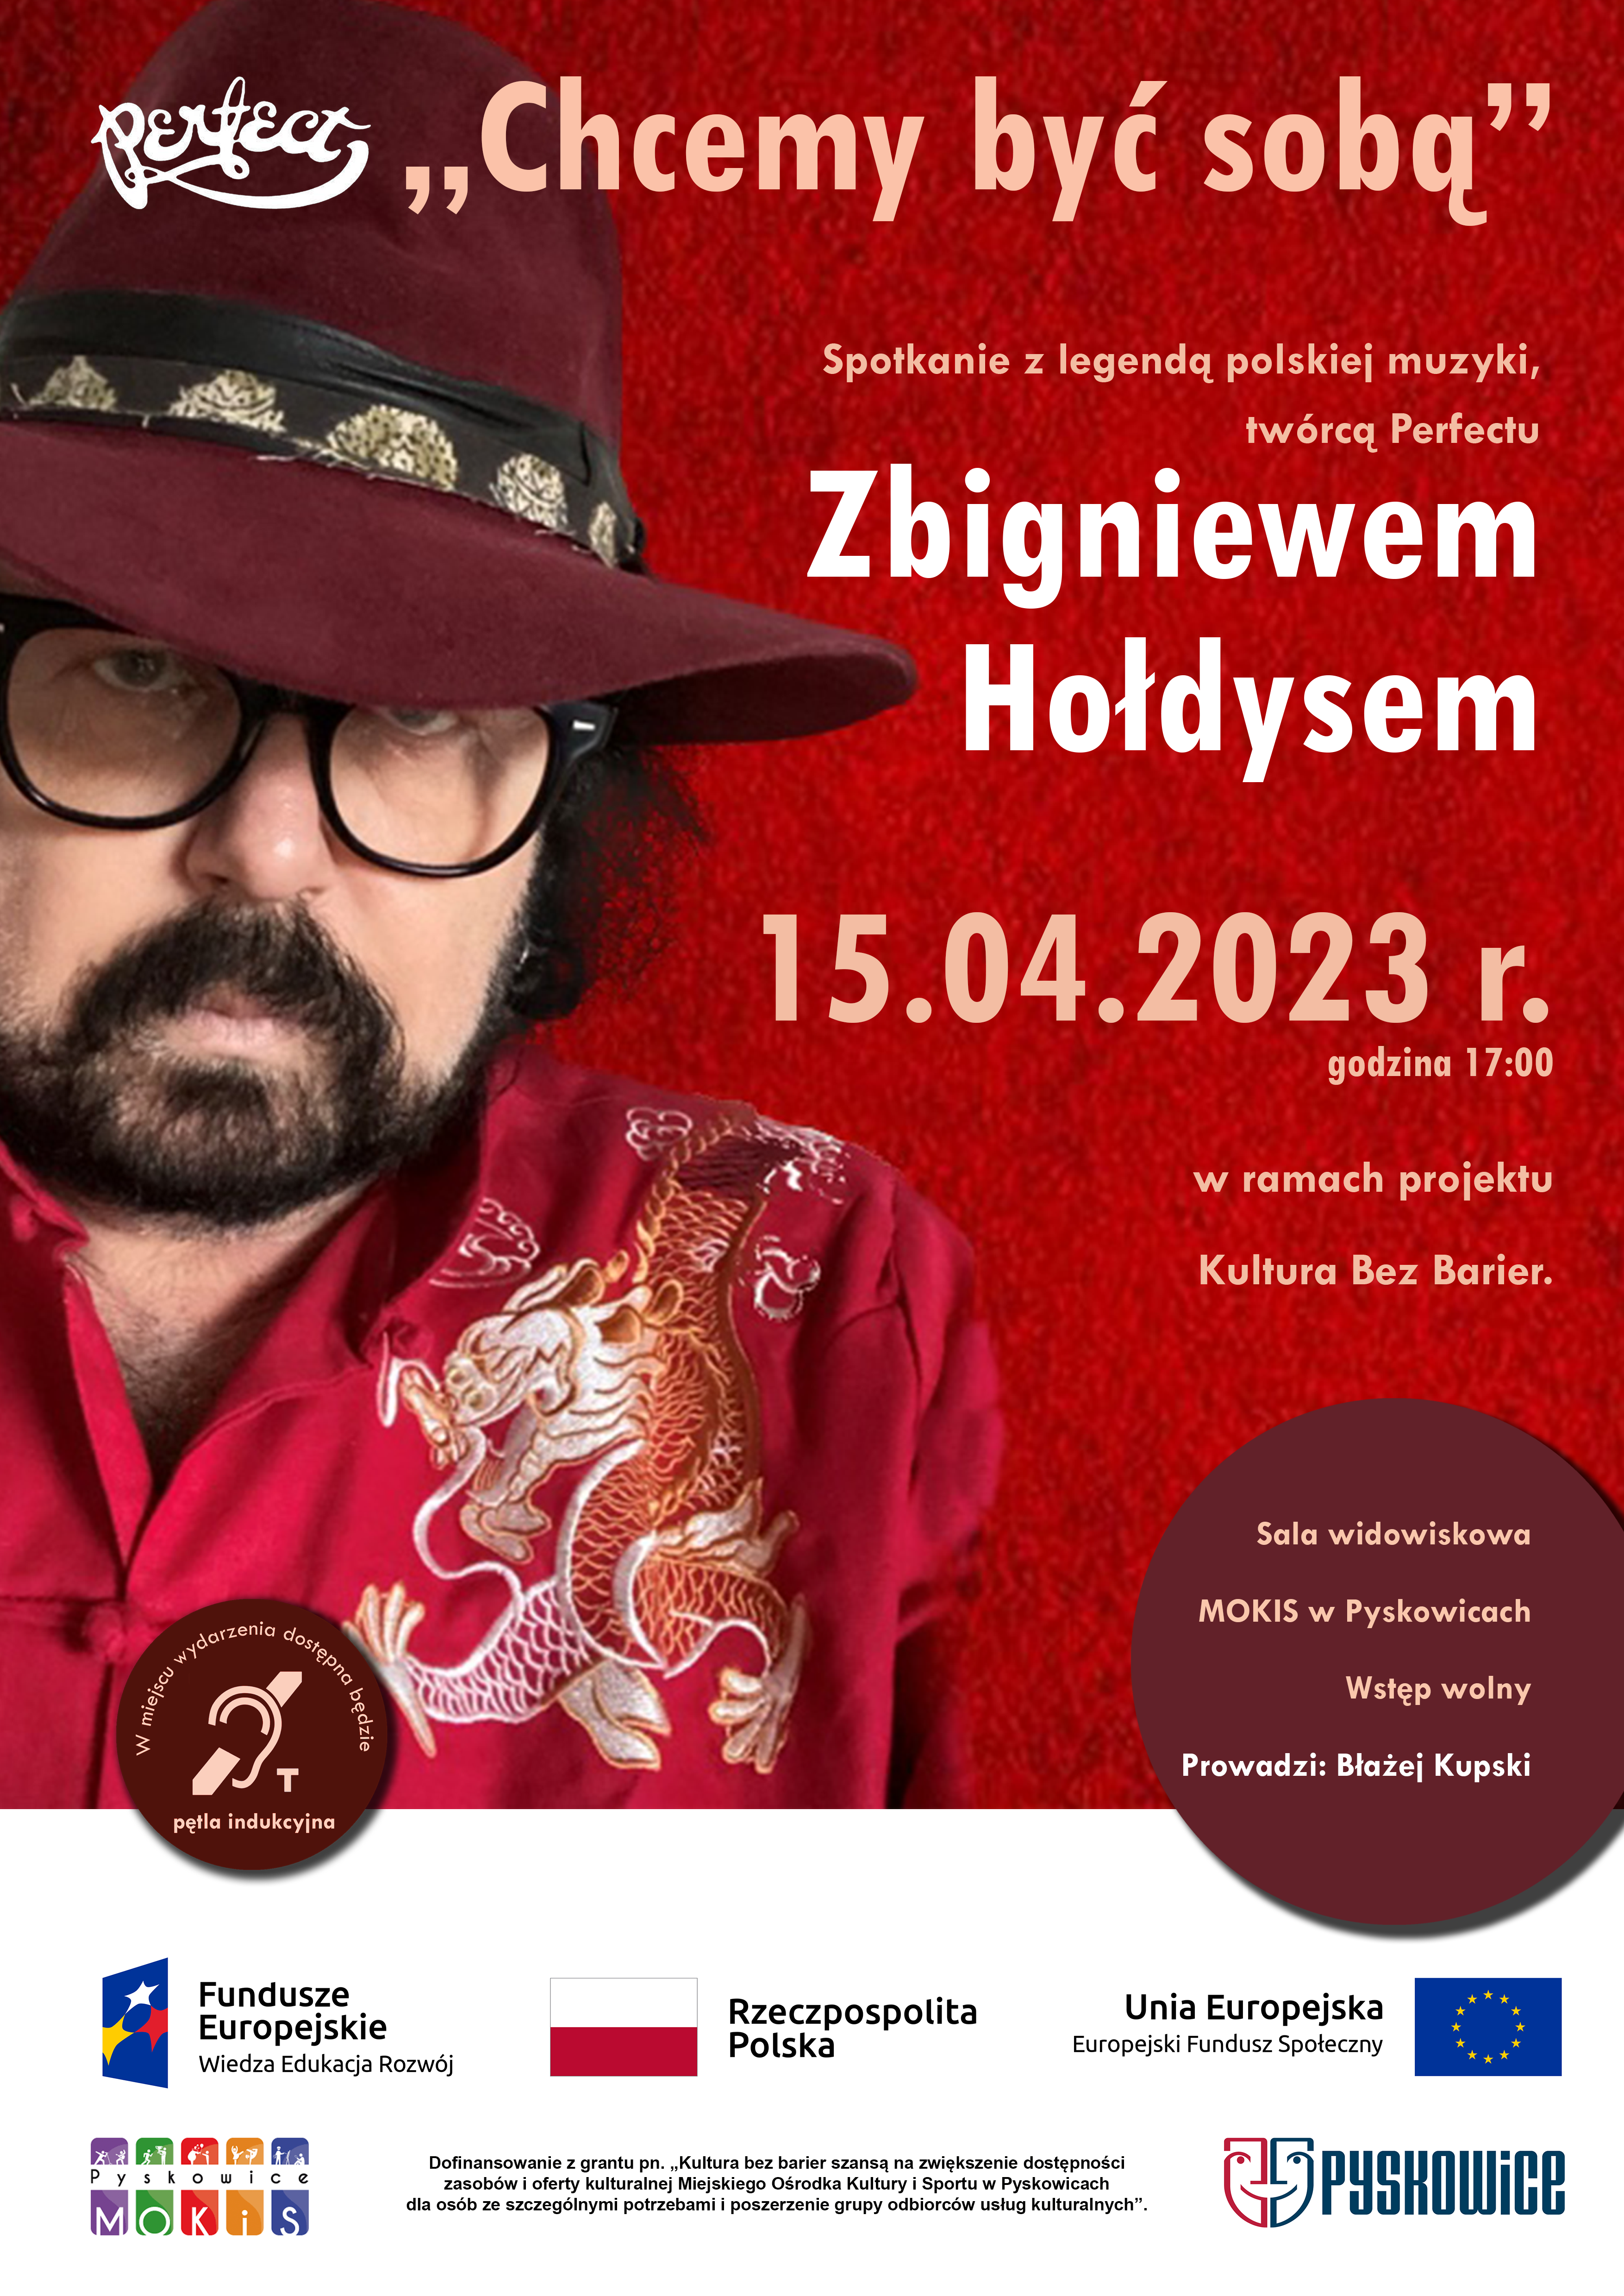 Plakat promujący spotkanie z legendą polskiej muzyki twórcą zespołu Perfect